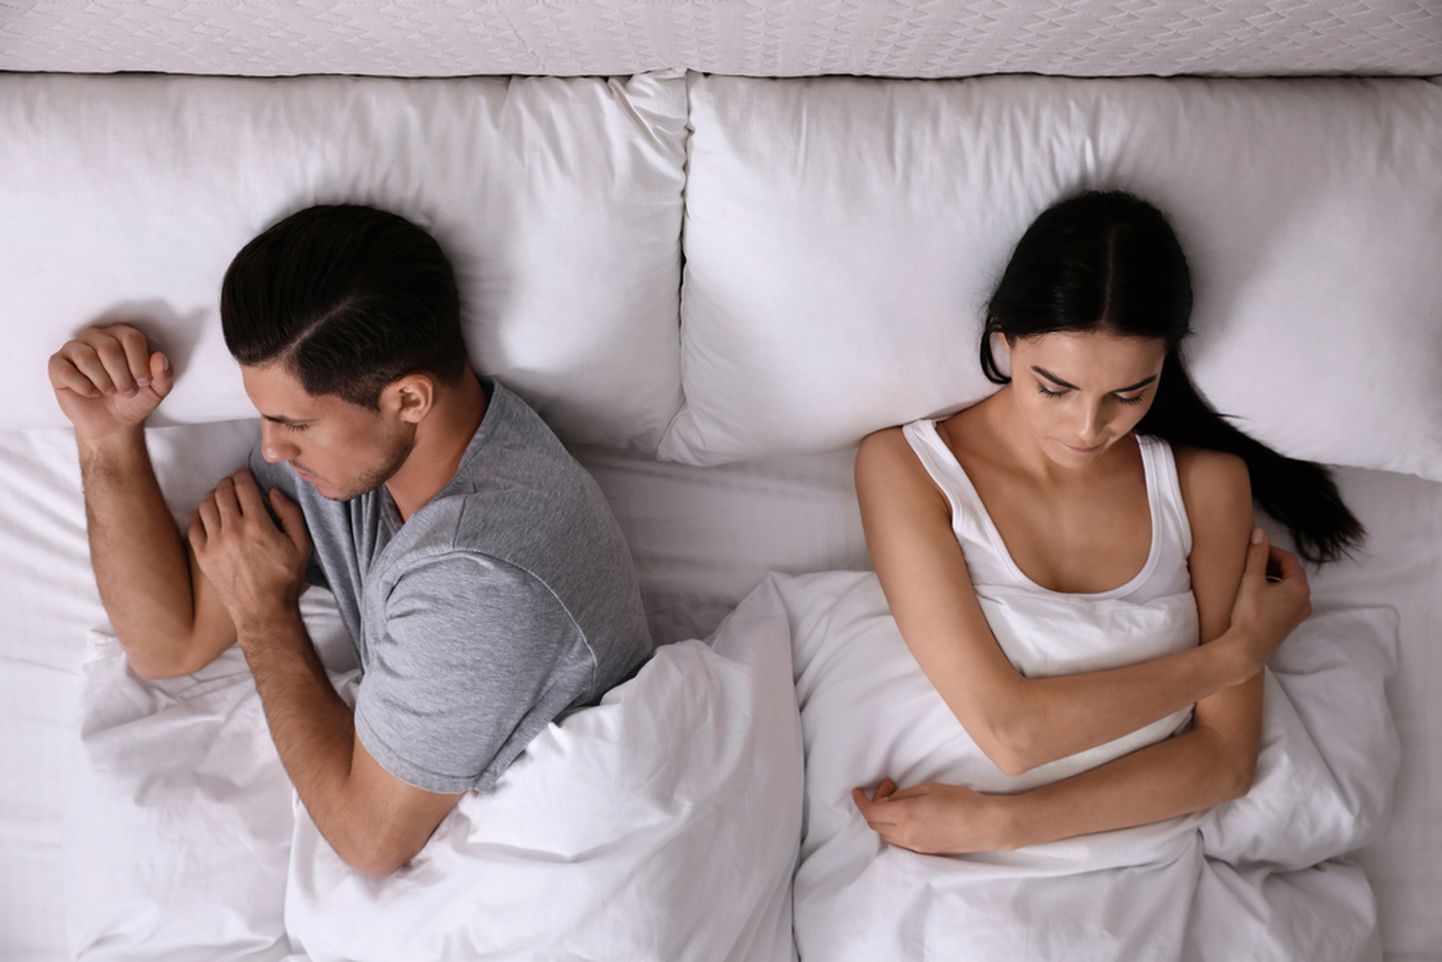 Mees ja naine voodis. Pilt on illustratiivne.